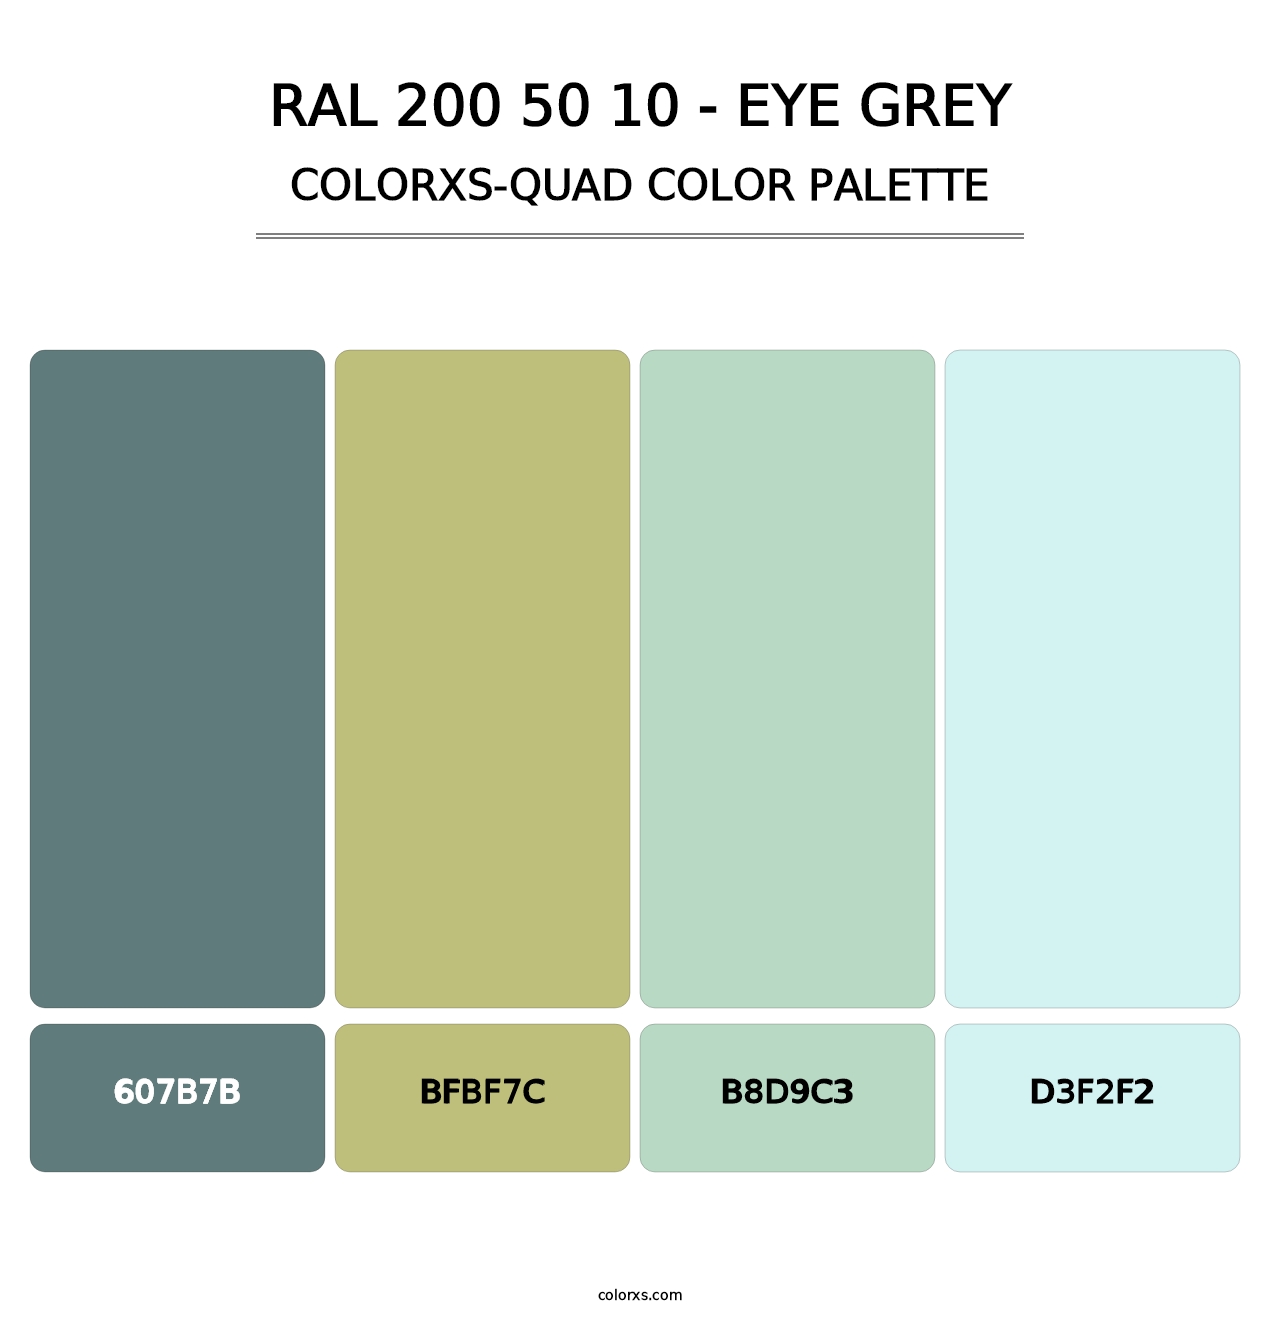 RAL 200 50 10 - Eye Grey - Colorxs Quad Palette